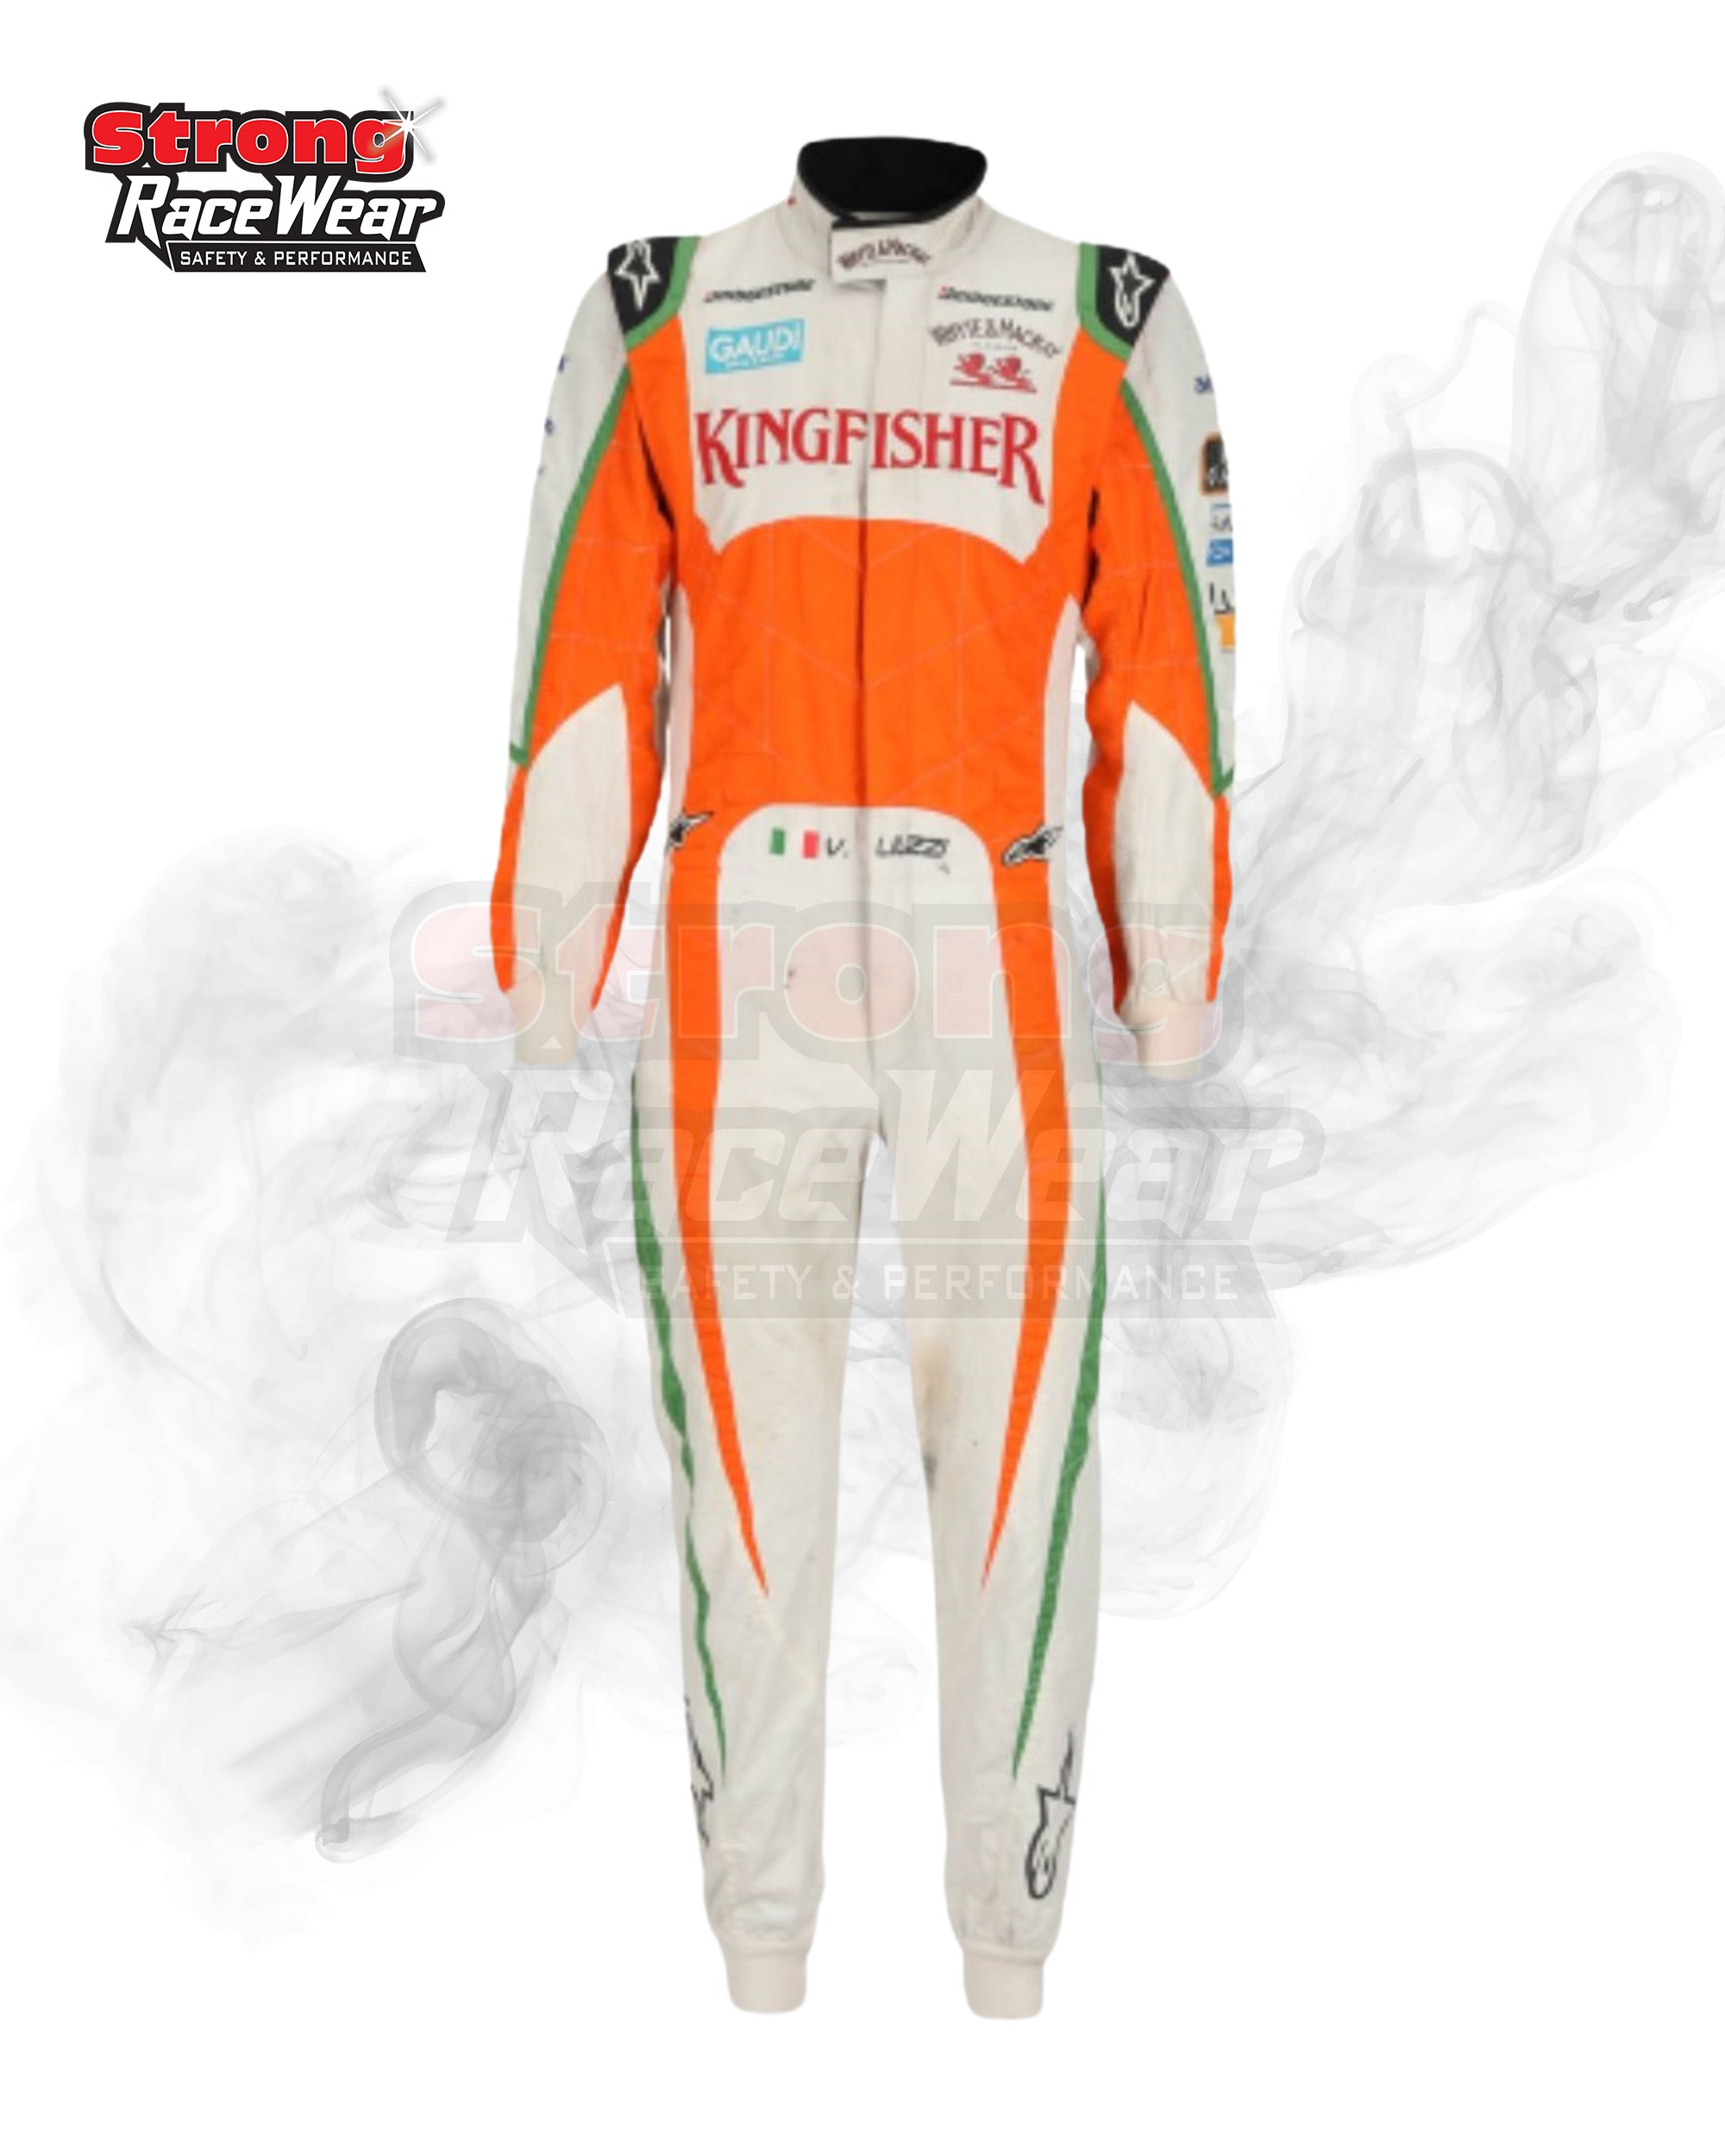 Vitantonio Liuzzi 2010 Force India F1 Team Race Suit